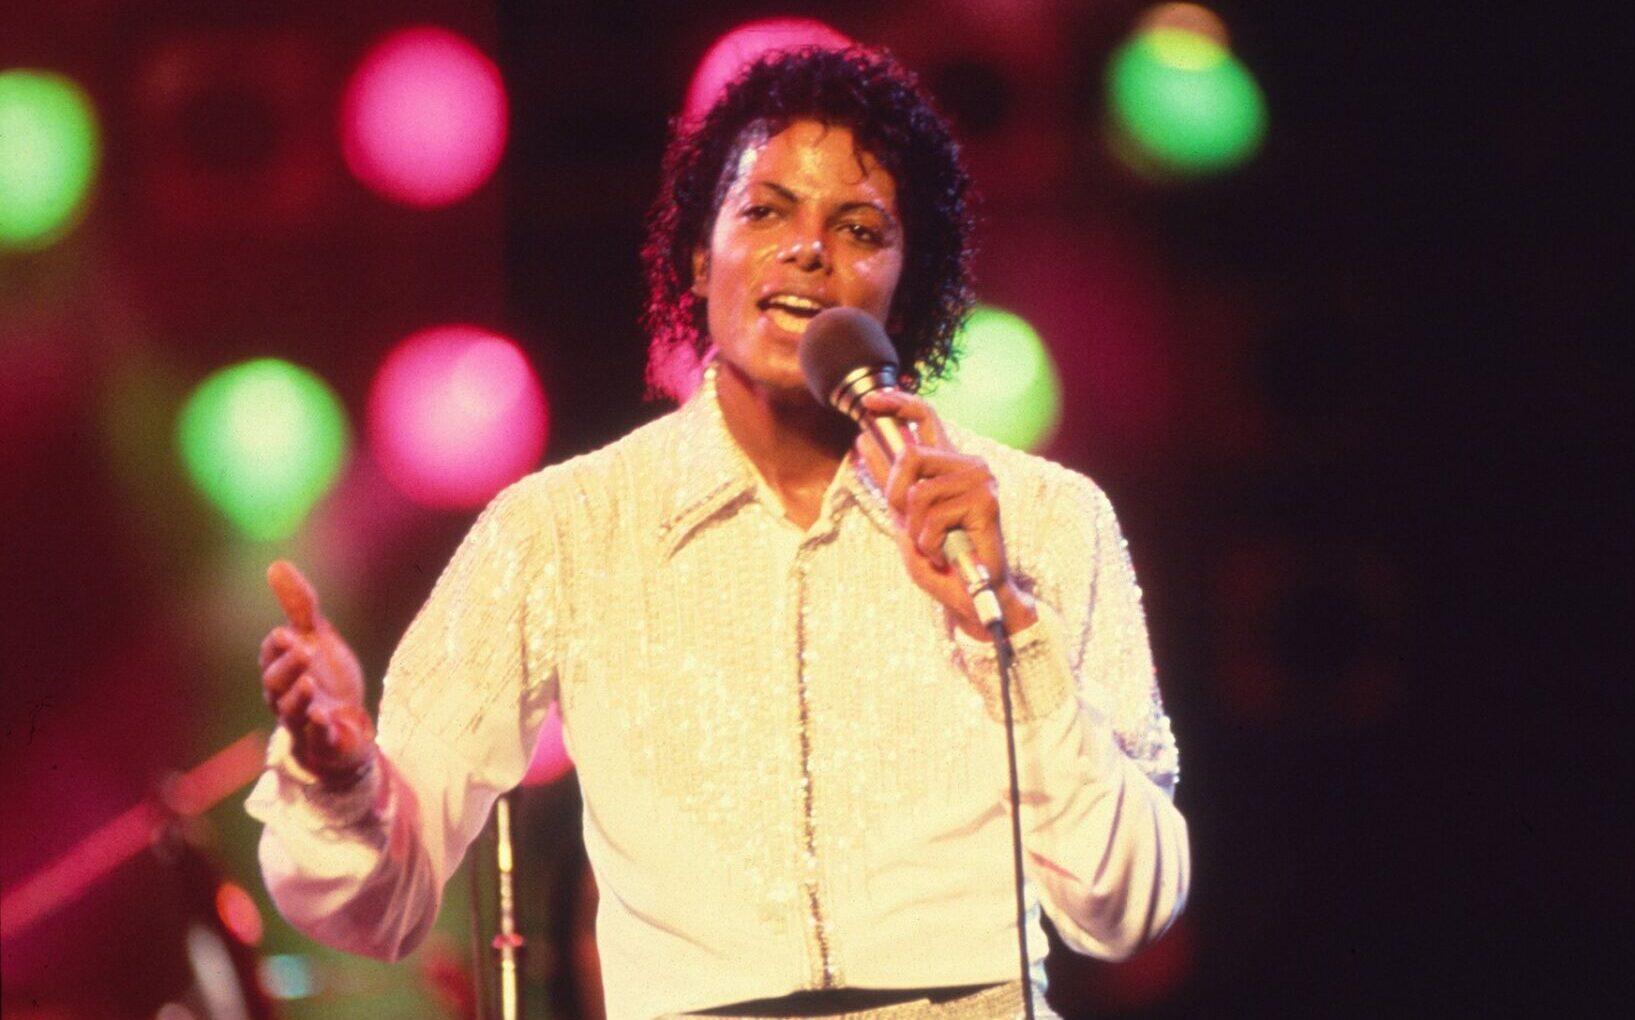 Historie kultowych piosenek. Michael Jackson - ''Billie Jean''